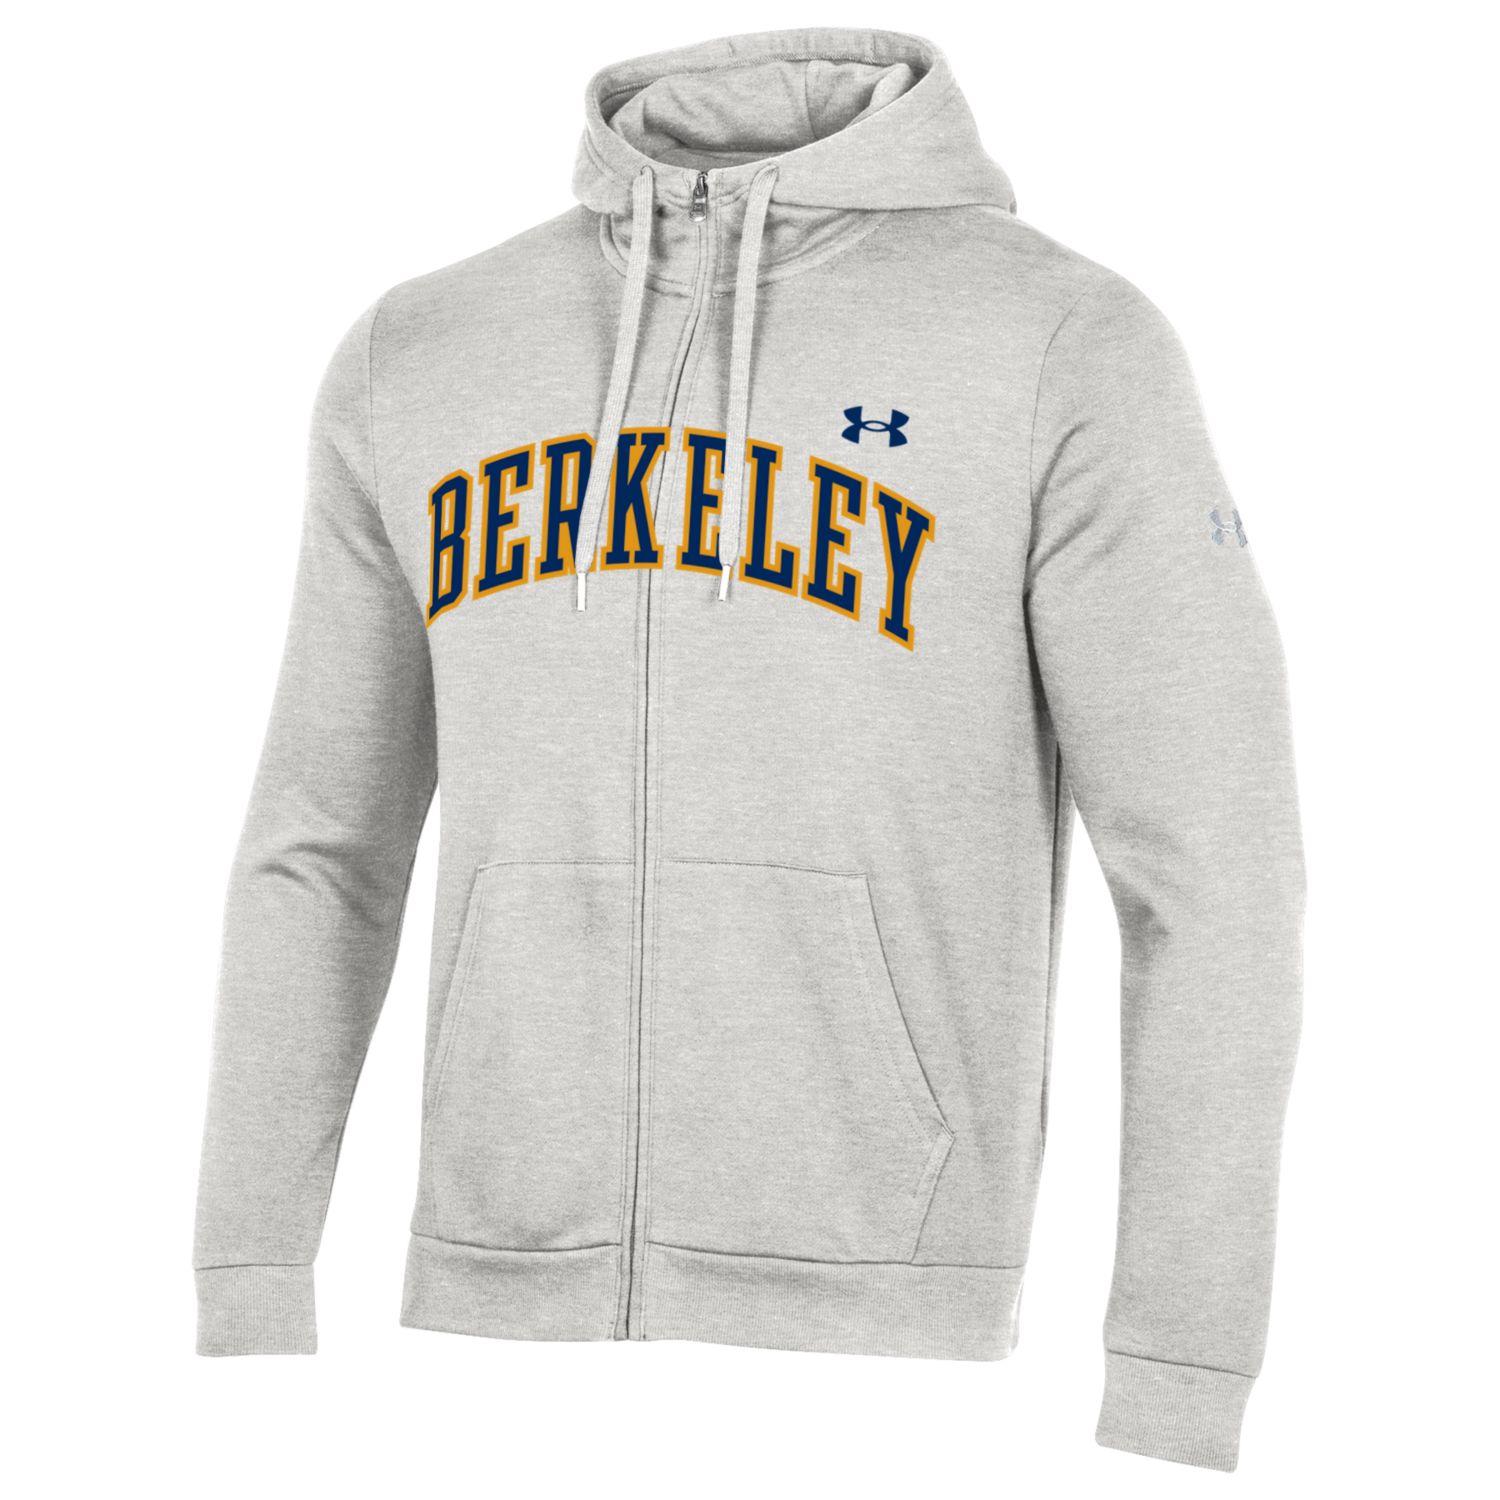 U.C. Berkeley Cal Berkeley arch applique men's full zip sweatshirt-Silver heather-Shop College Wear